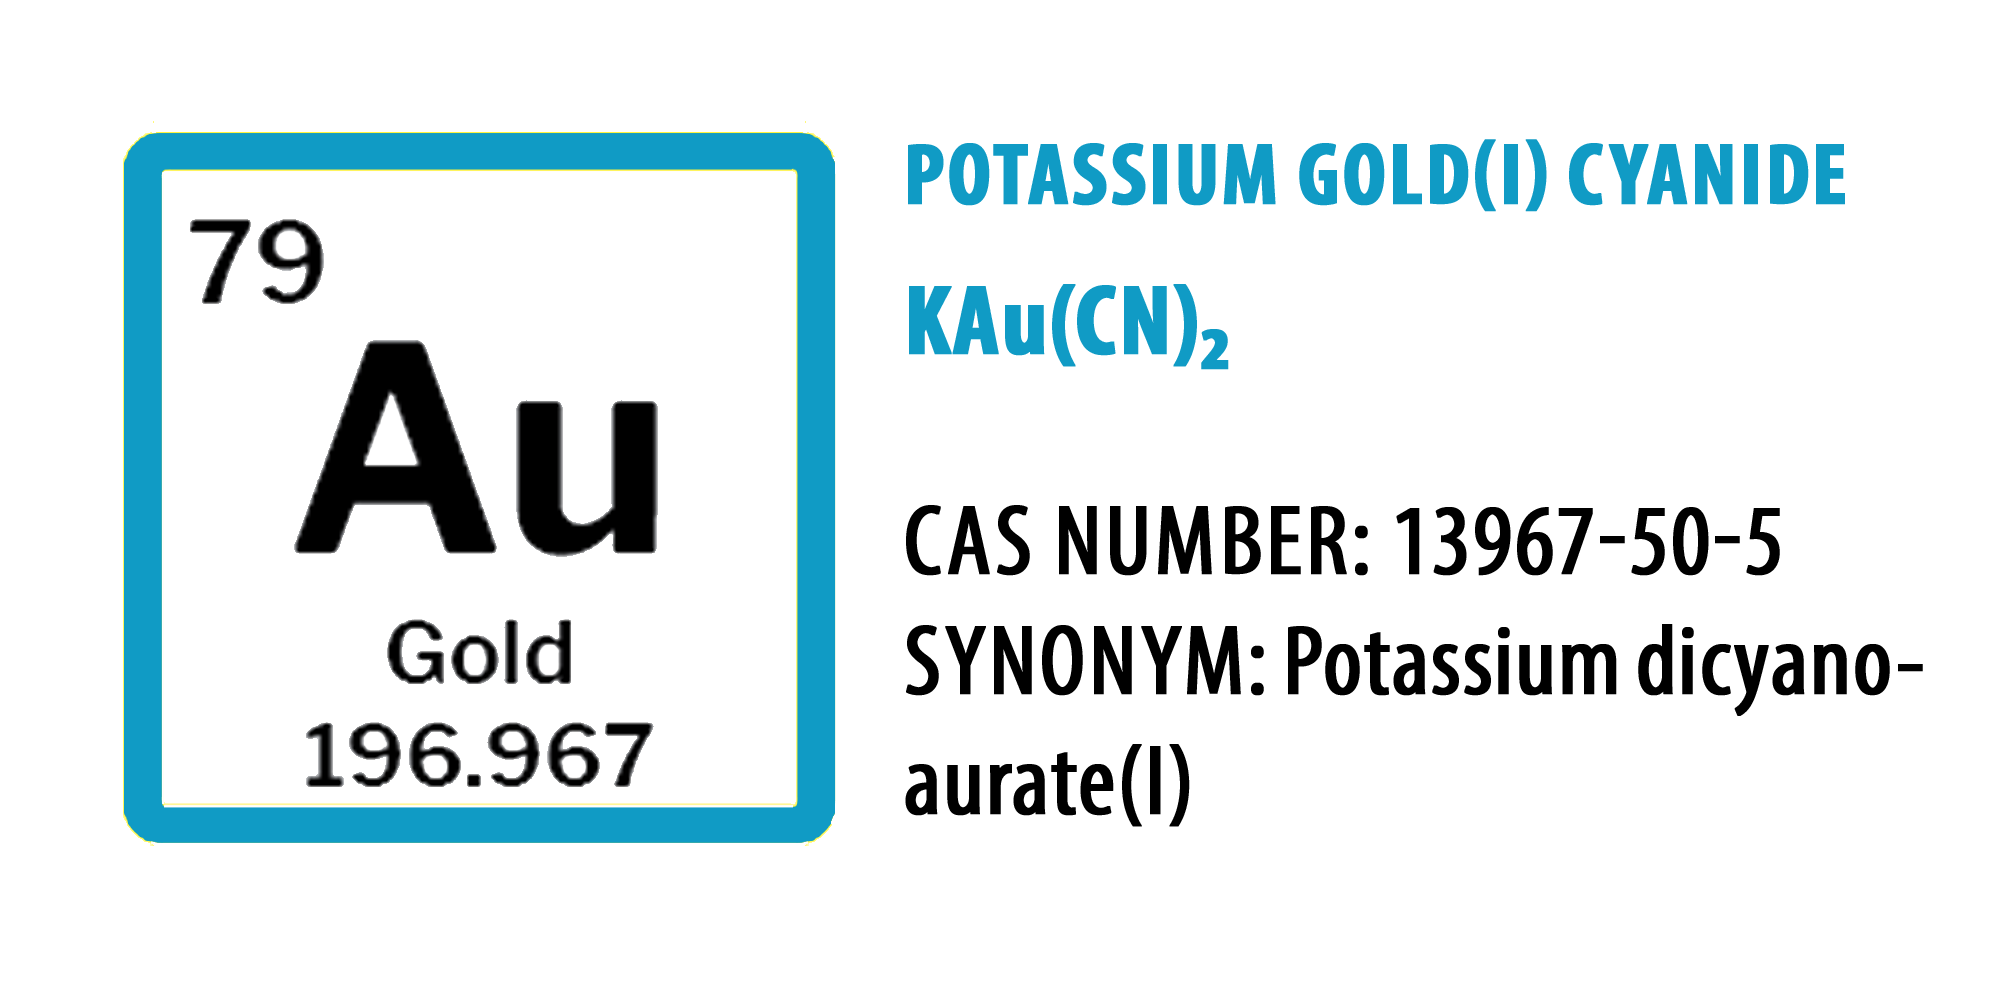 Potassium gold(I)